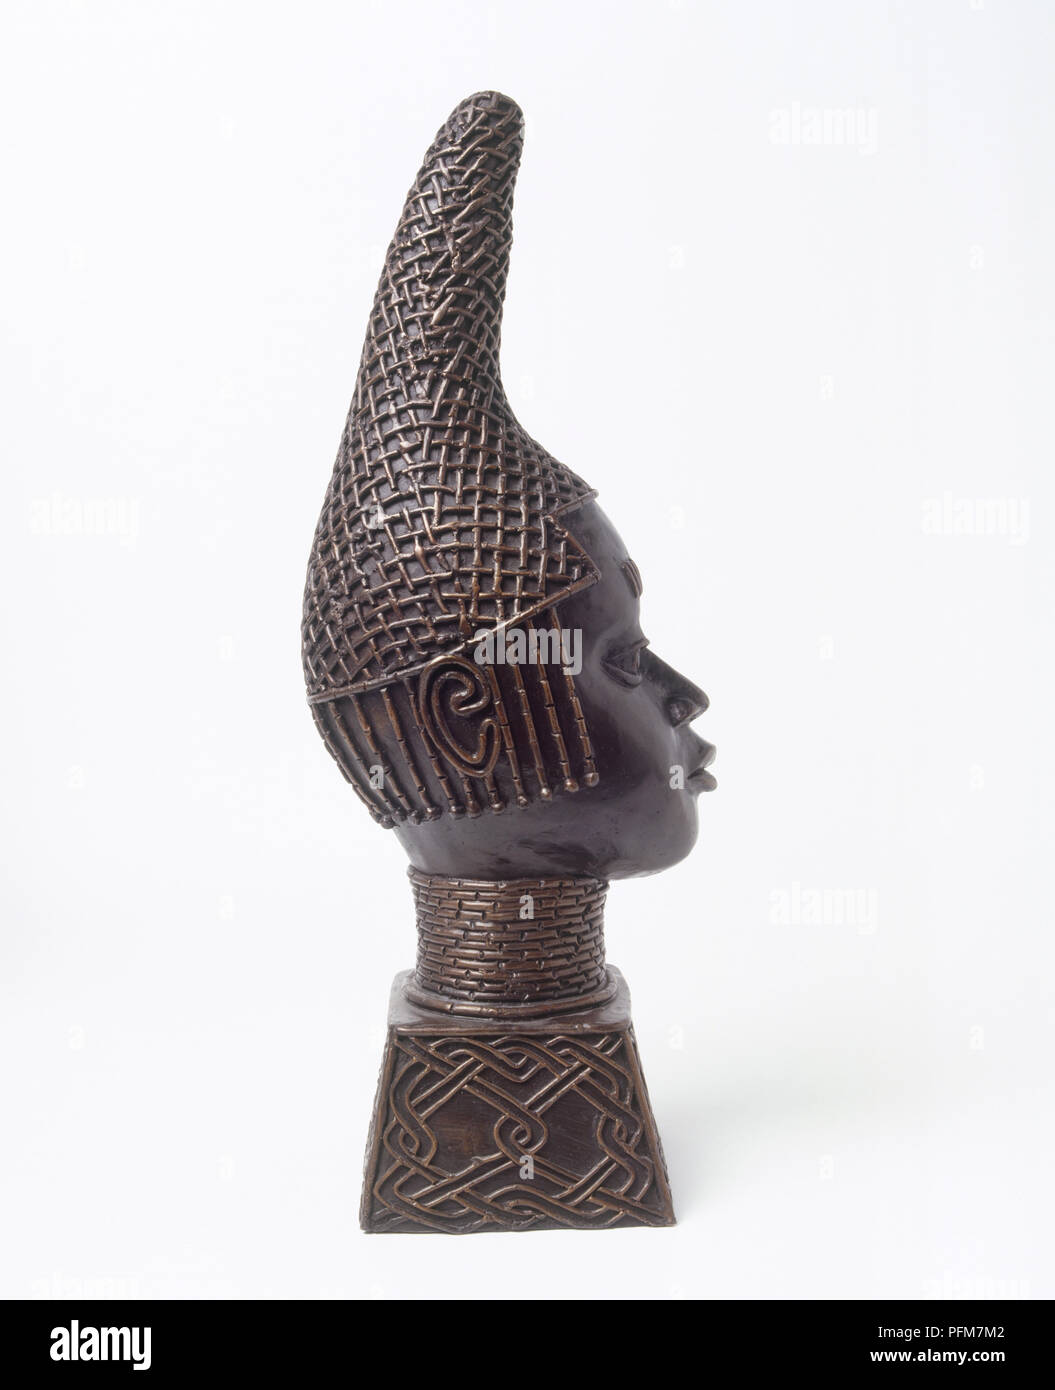 Cabeza de una réplica de la reina madre de Benin (Iyoba) hechas de bronce Foto de stock